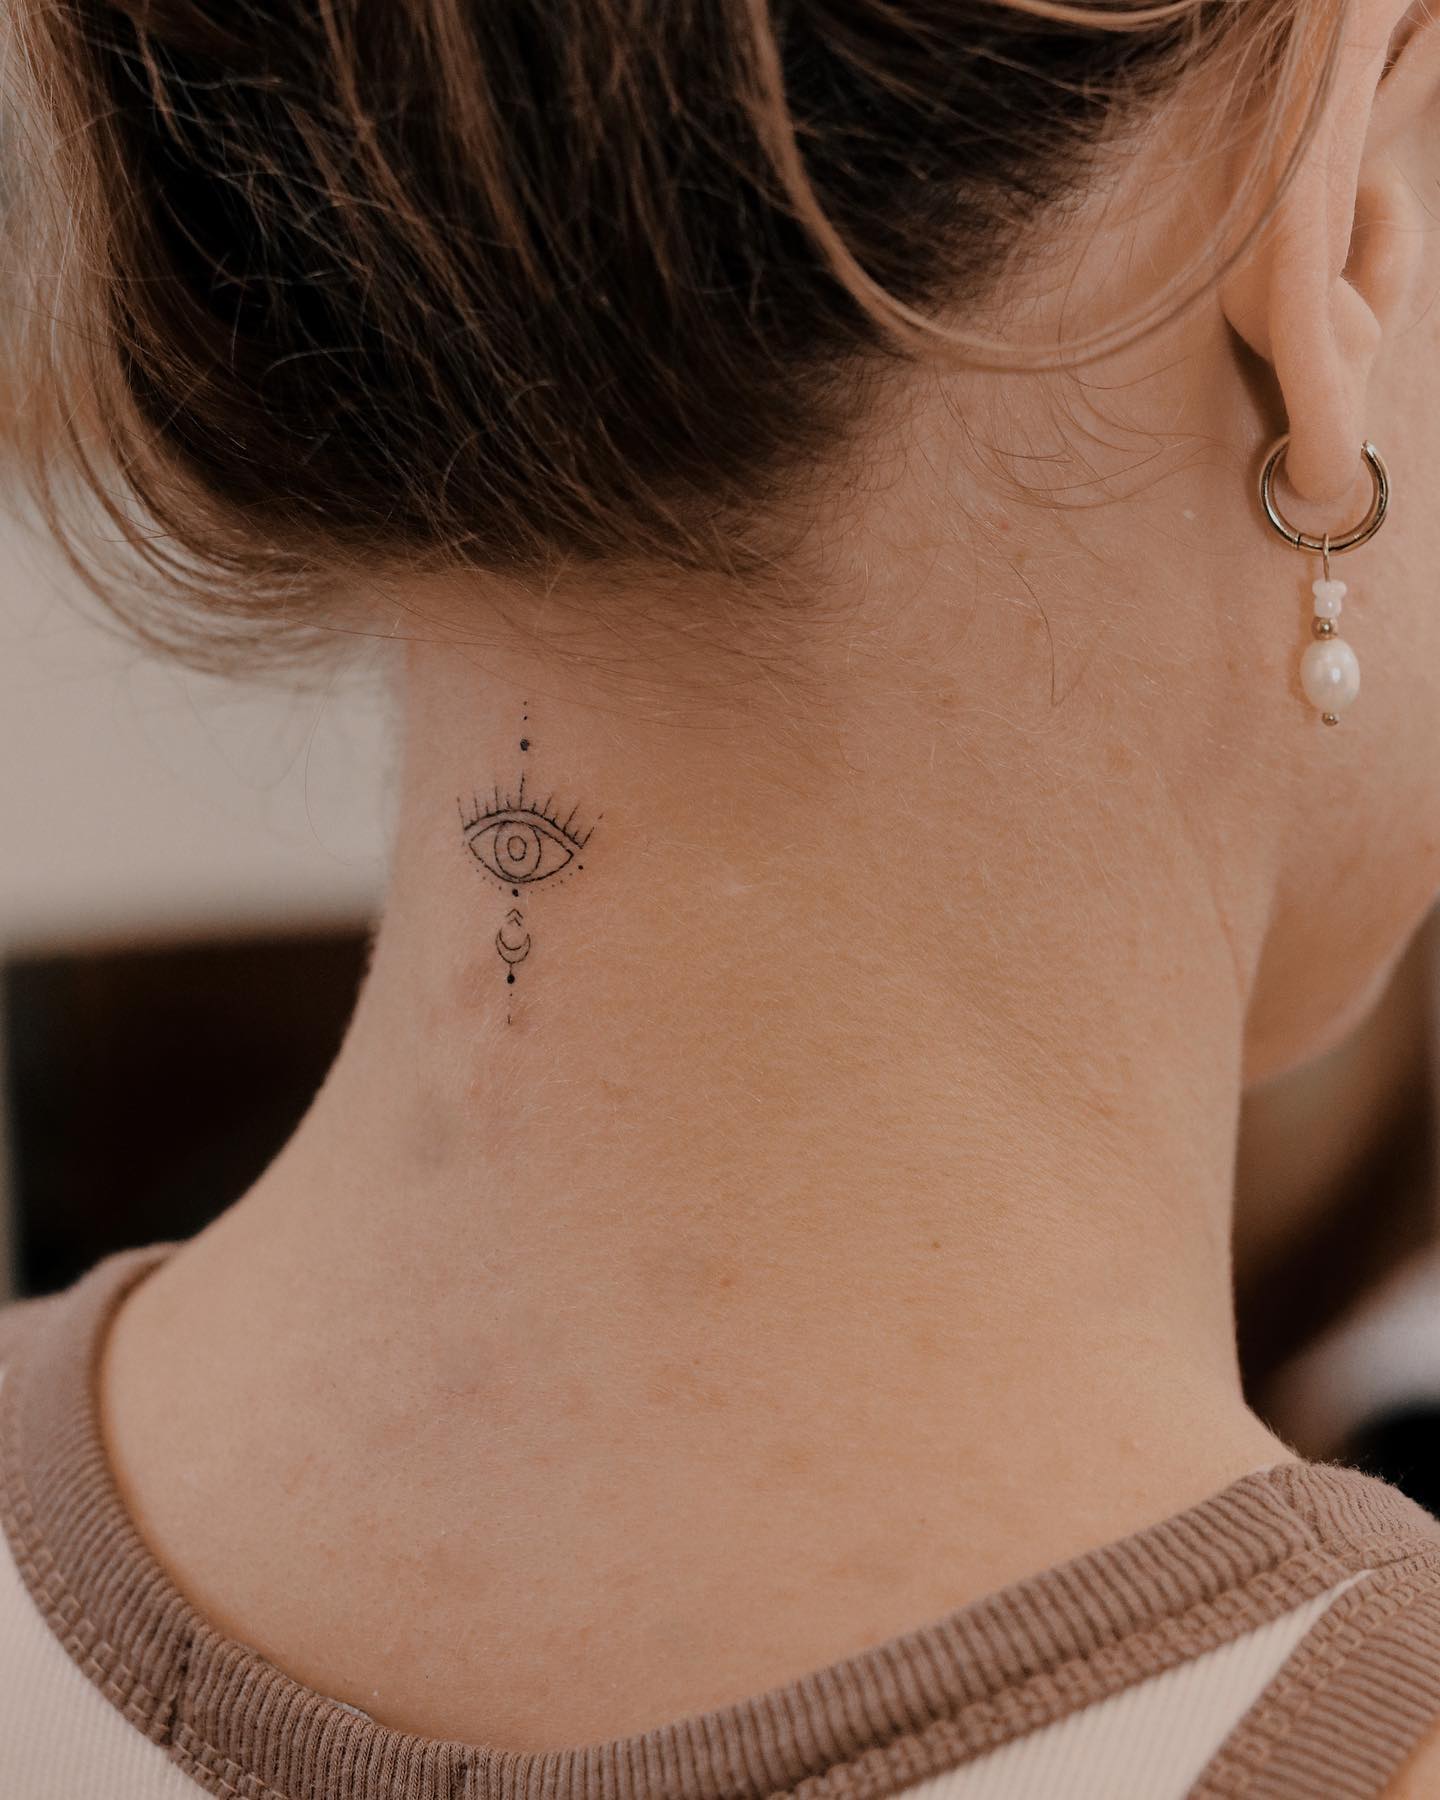 Small Neck Tattoo